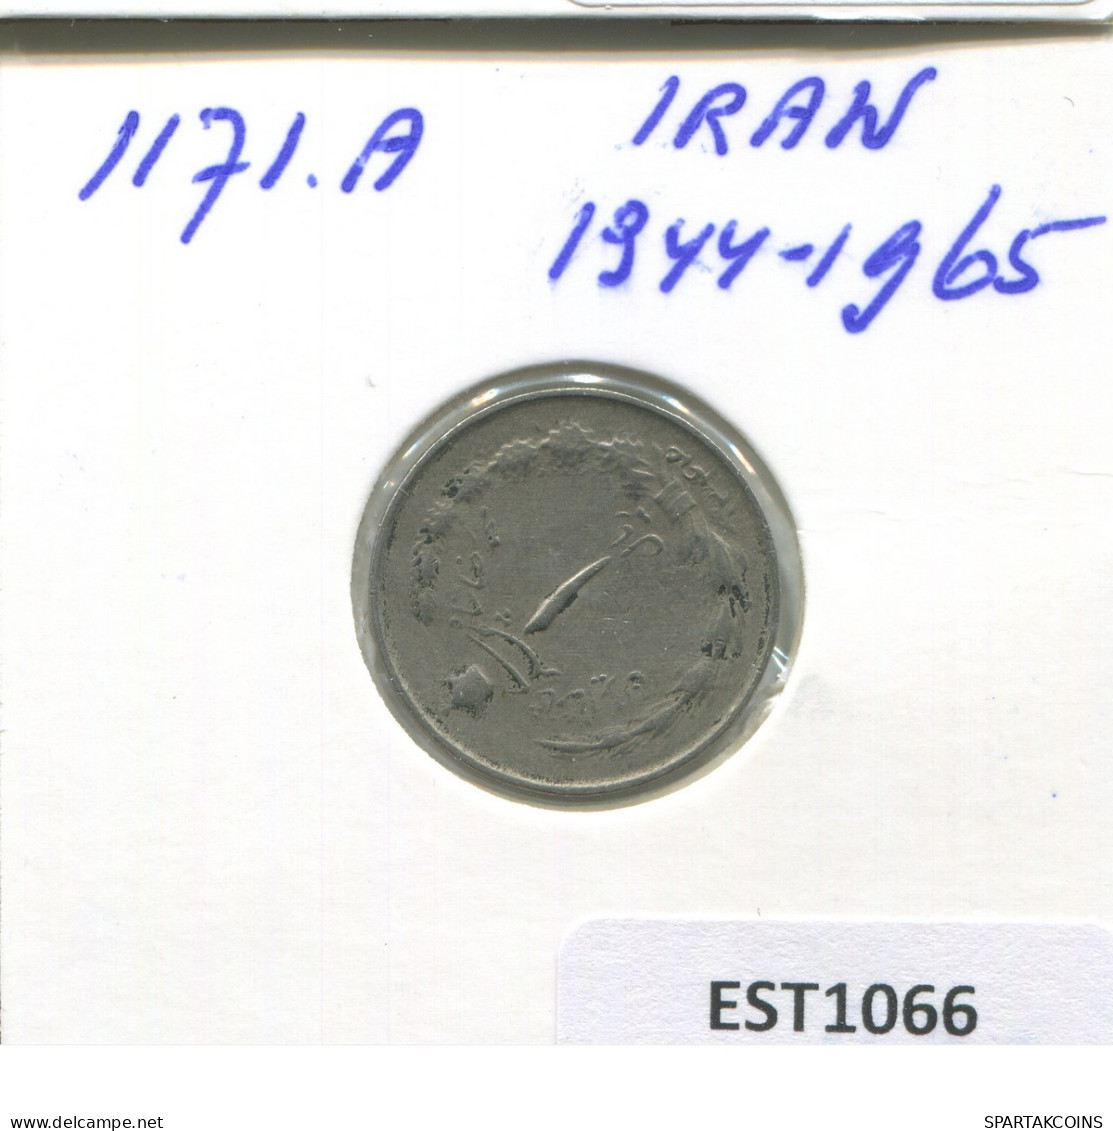 IRAN 1 RIAL 1965 Islamisch Münze #EST1066.2.D.D.A - Iran